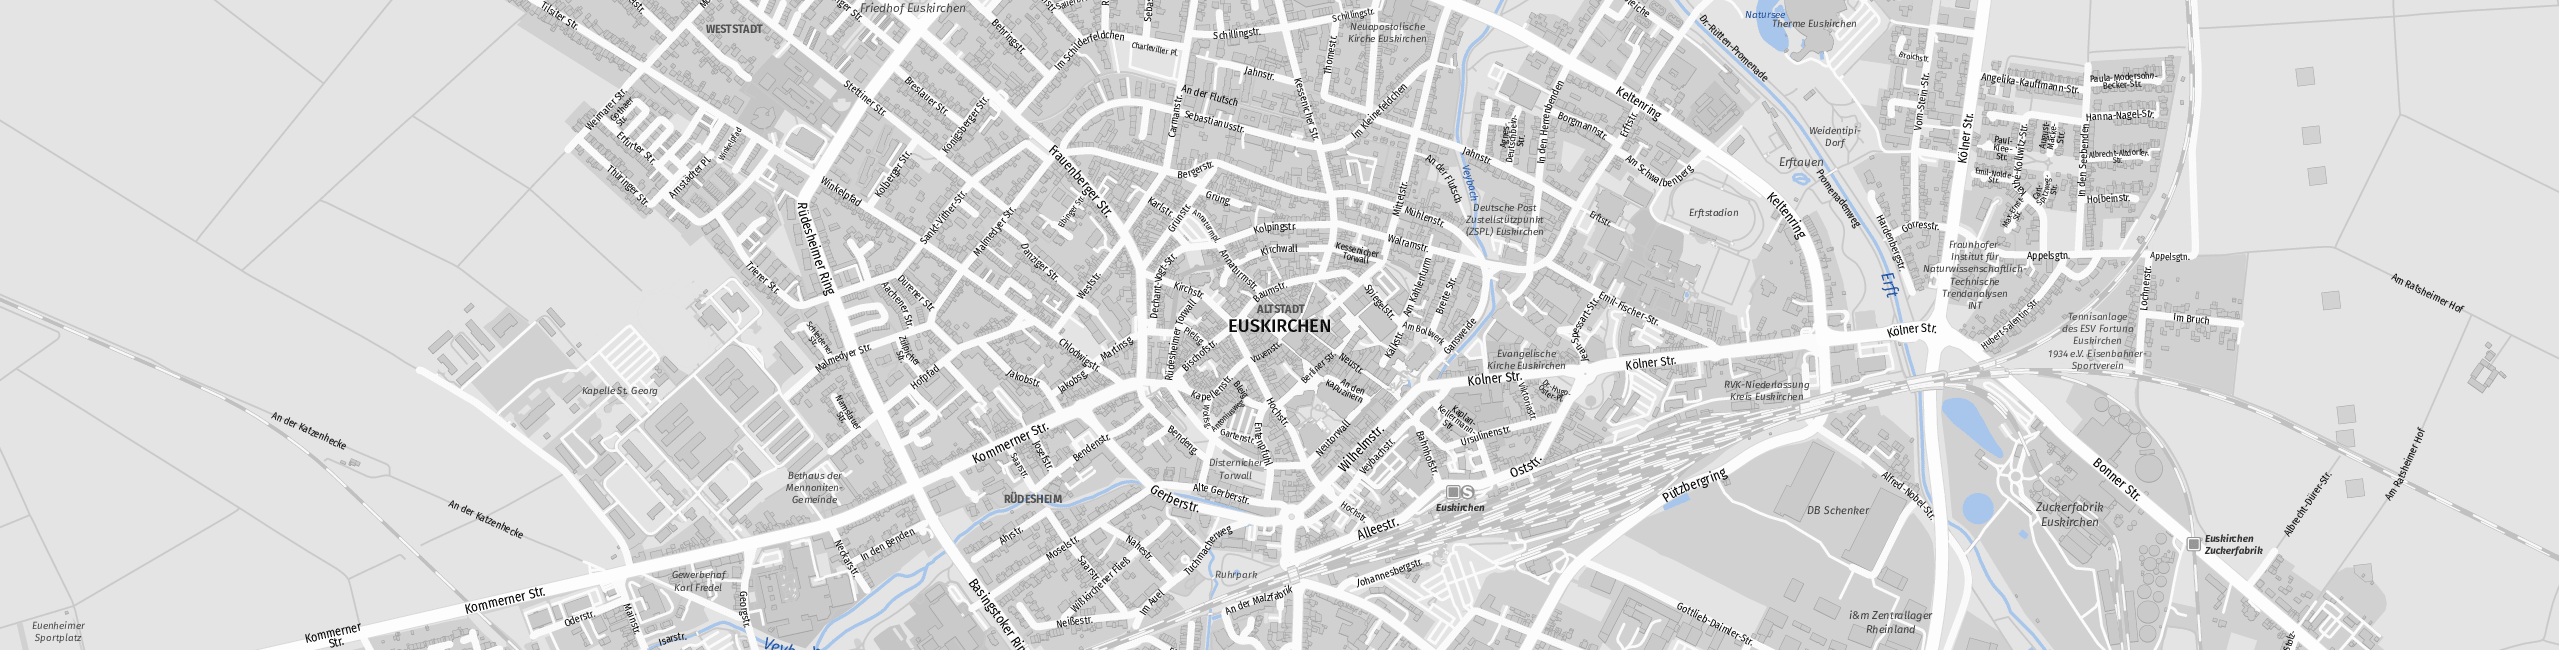 Stadtplan Euskirchen zum Downloaden.